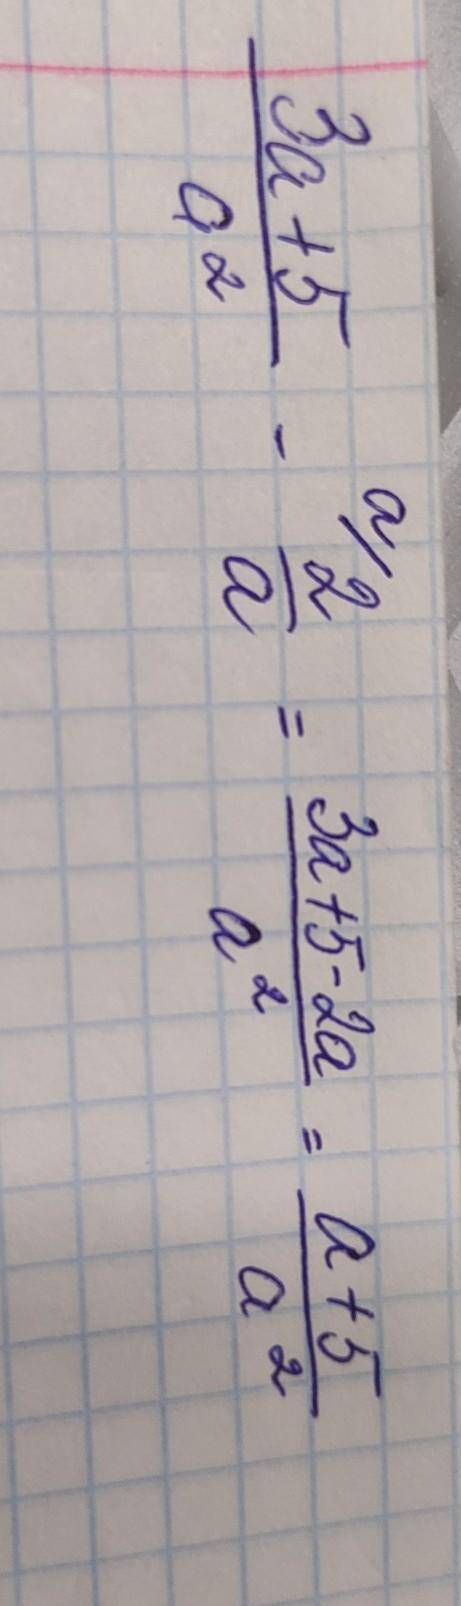 Найдите разницу дробей: 3а+5/а^2 и 2/а